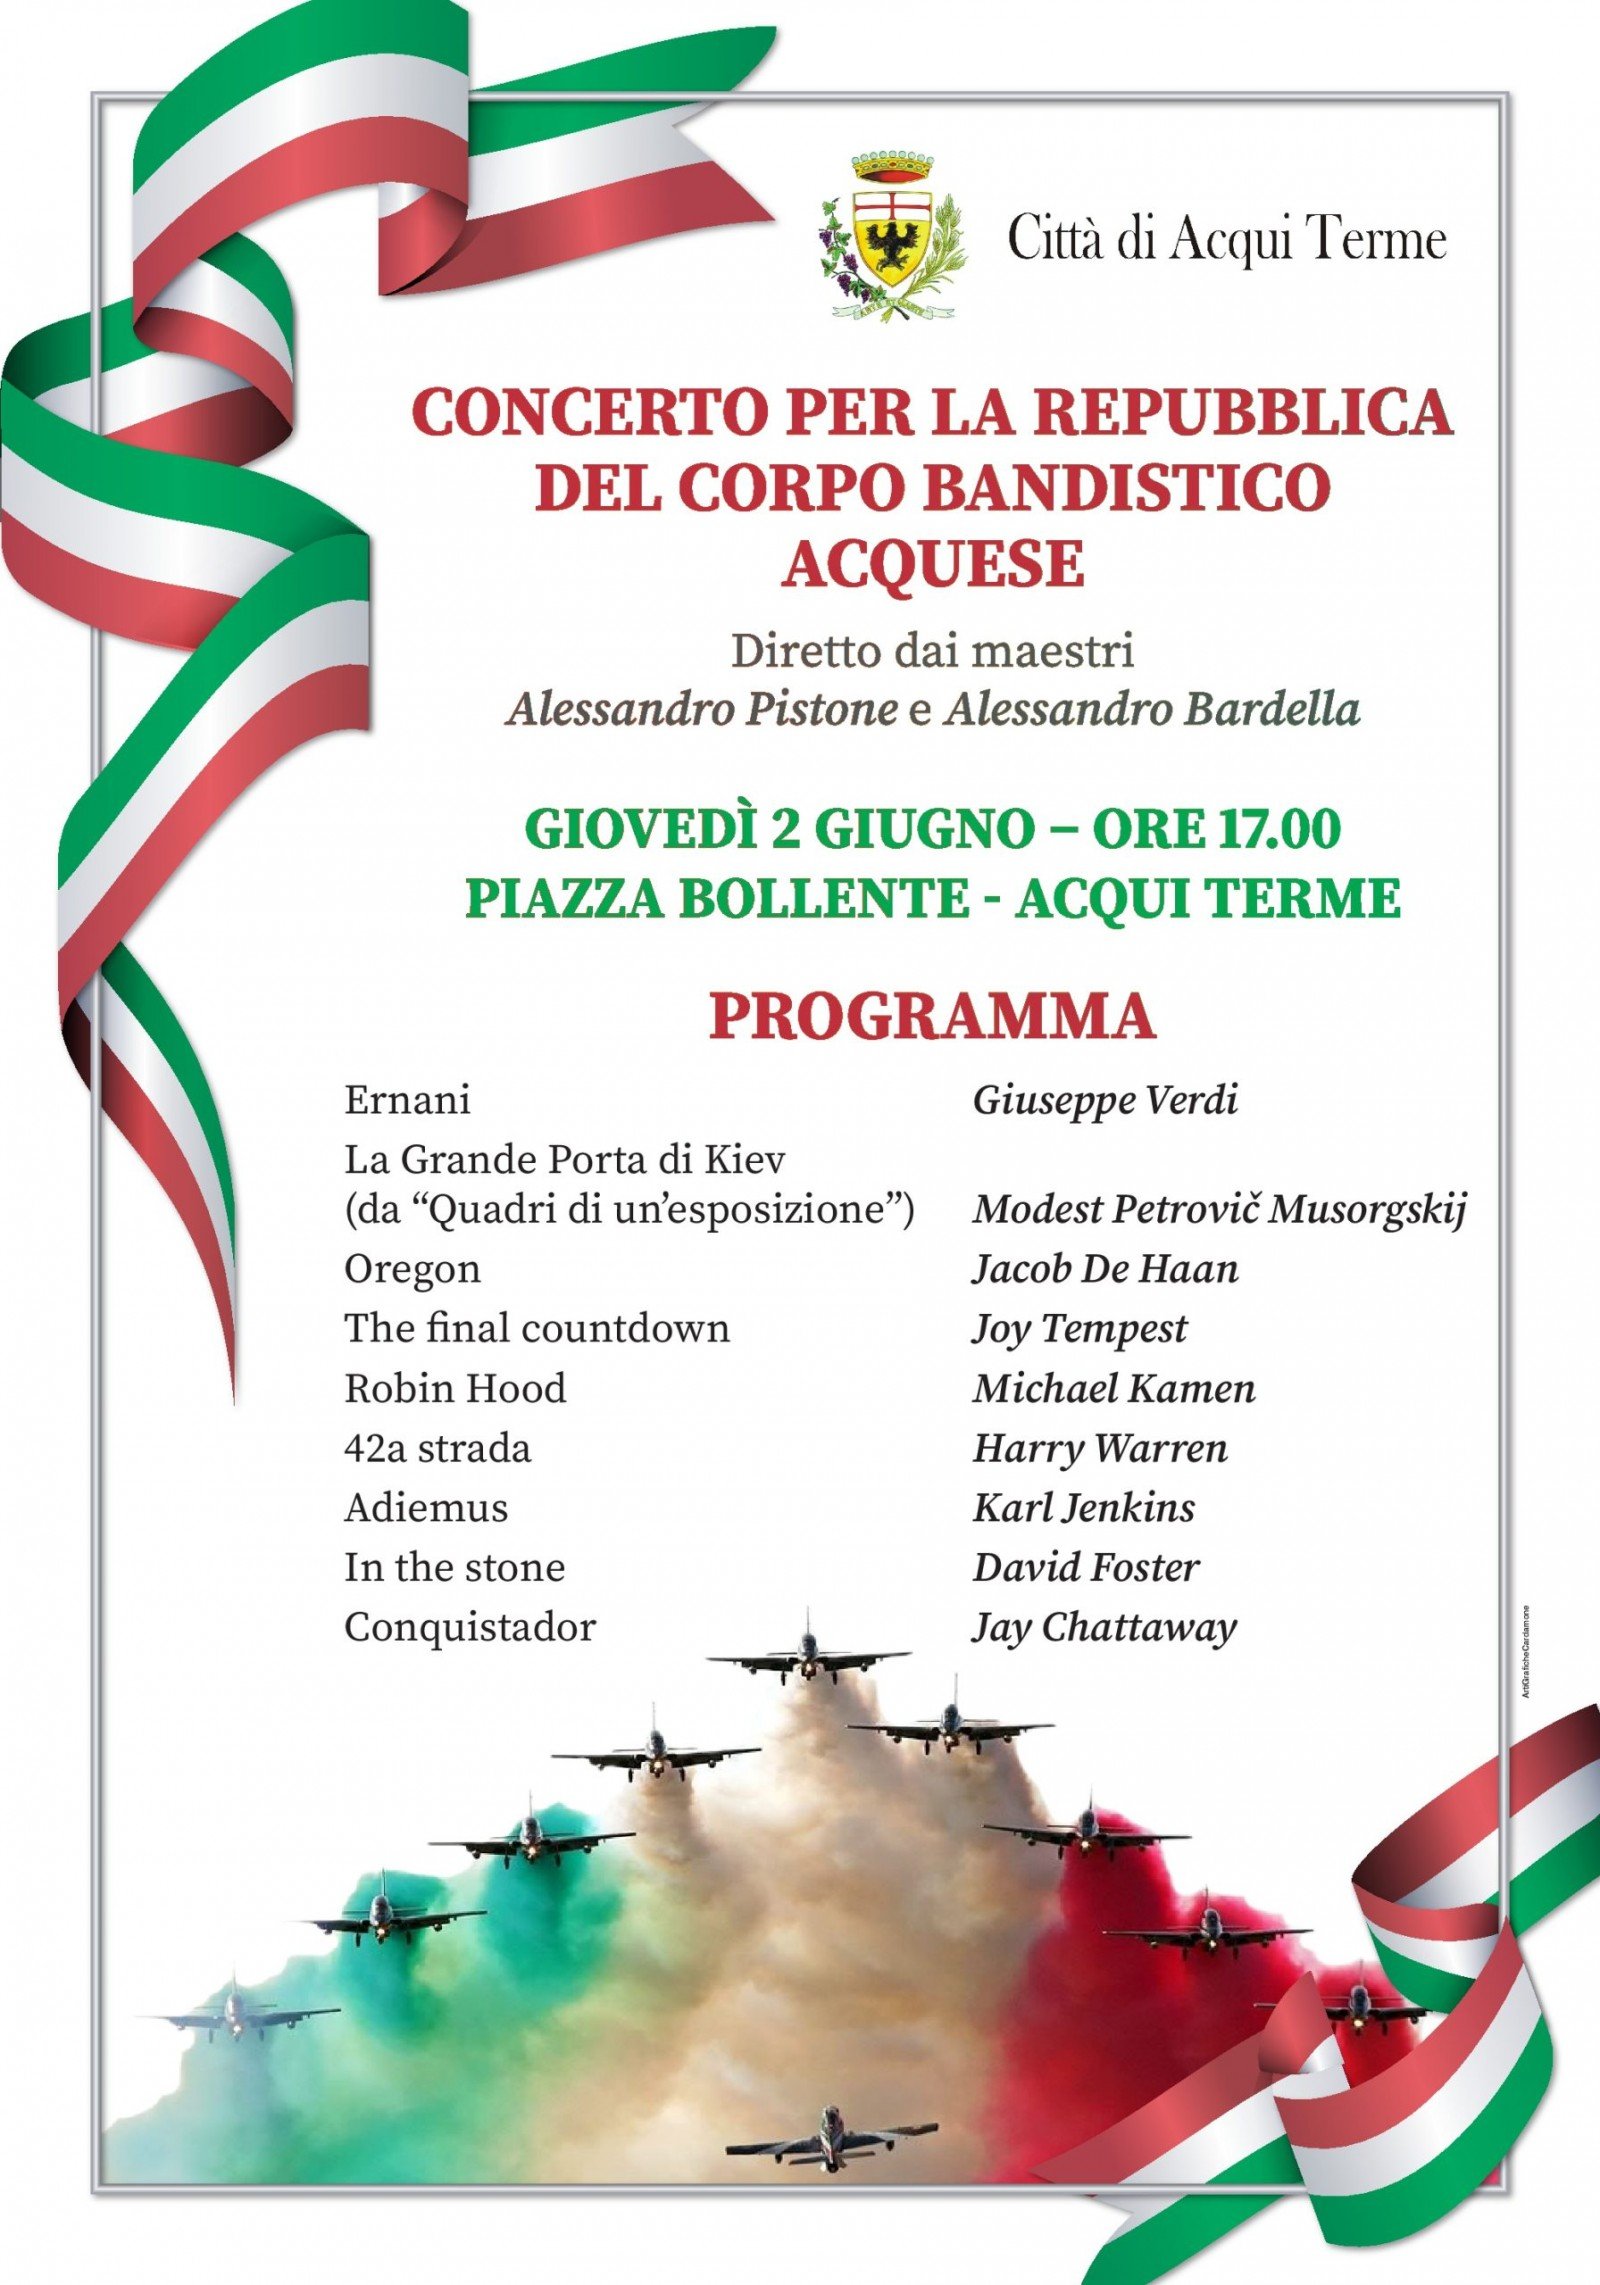 Il 2 giugno il concerto per la Repubblica del Corpo Bandistico Acquese ad Acqui Terme